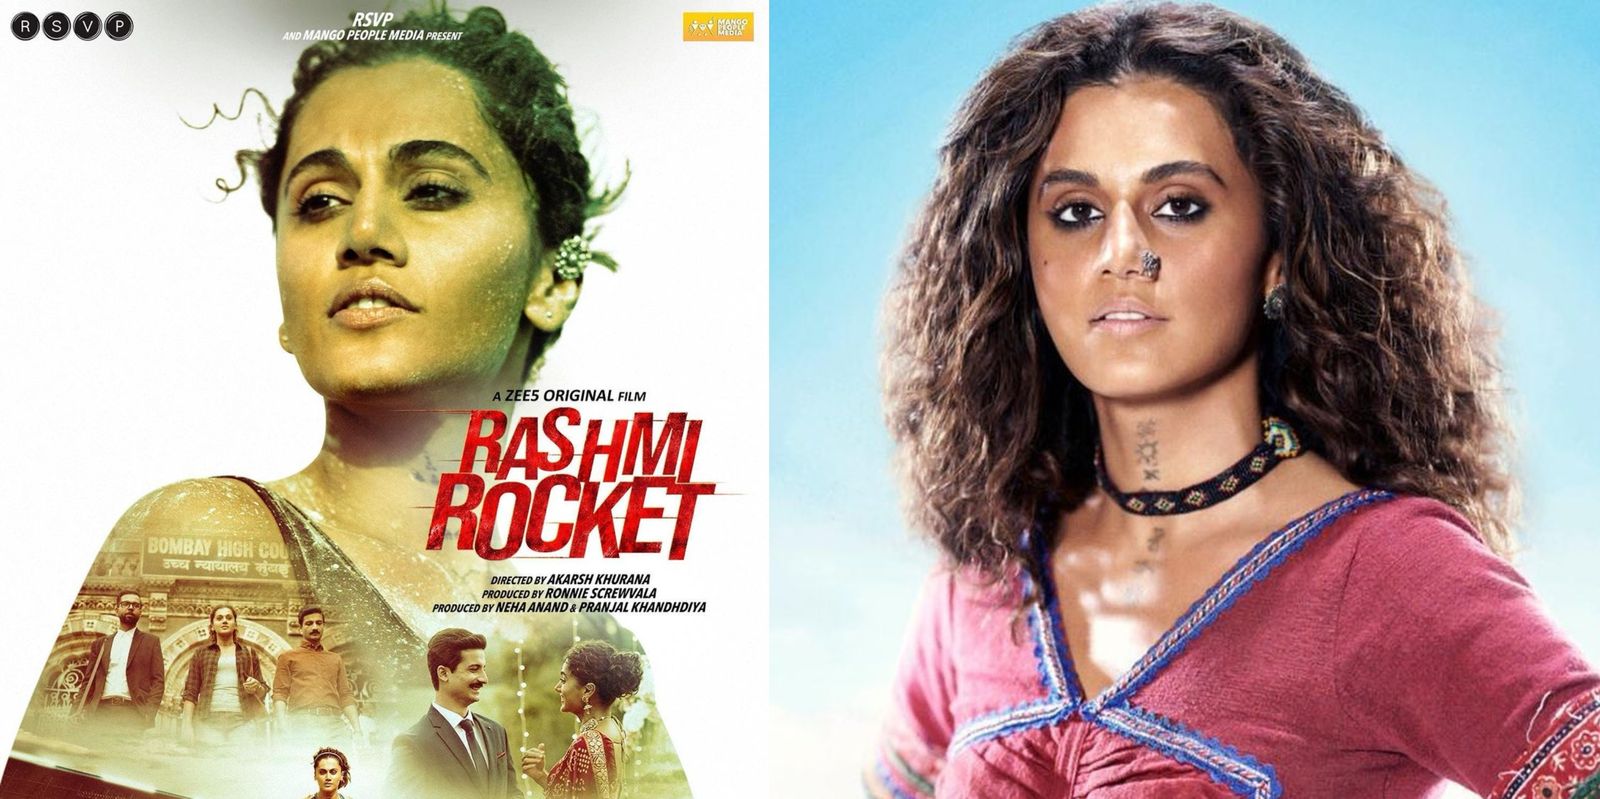 Rashmi Rocket: Taapsee Pannu books Dussehra for OTT premiere of her film; deets inside